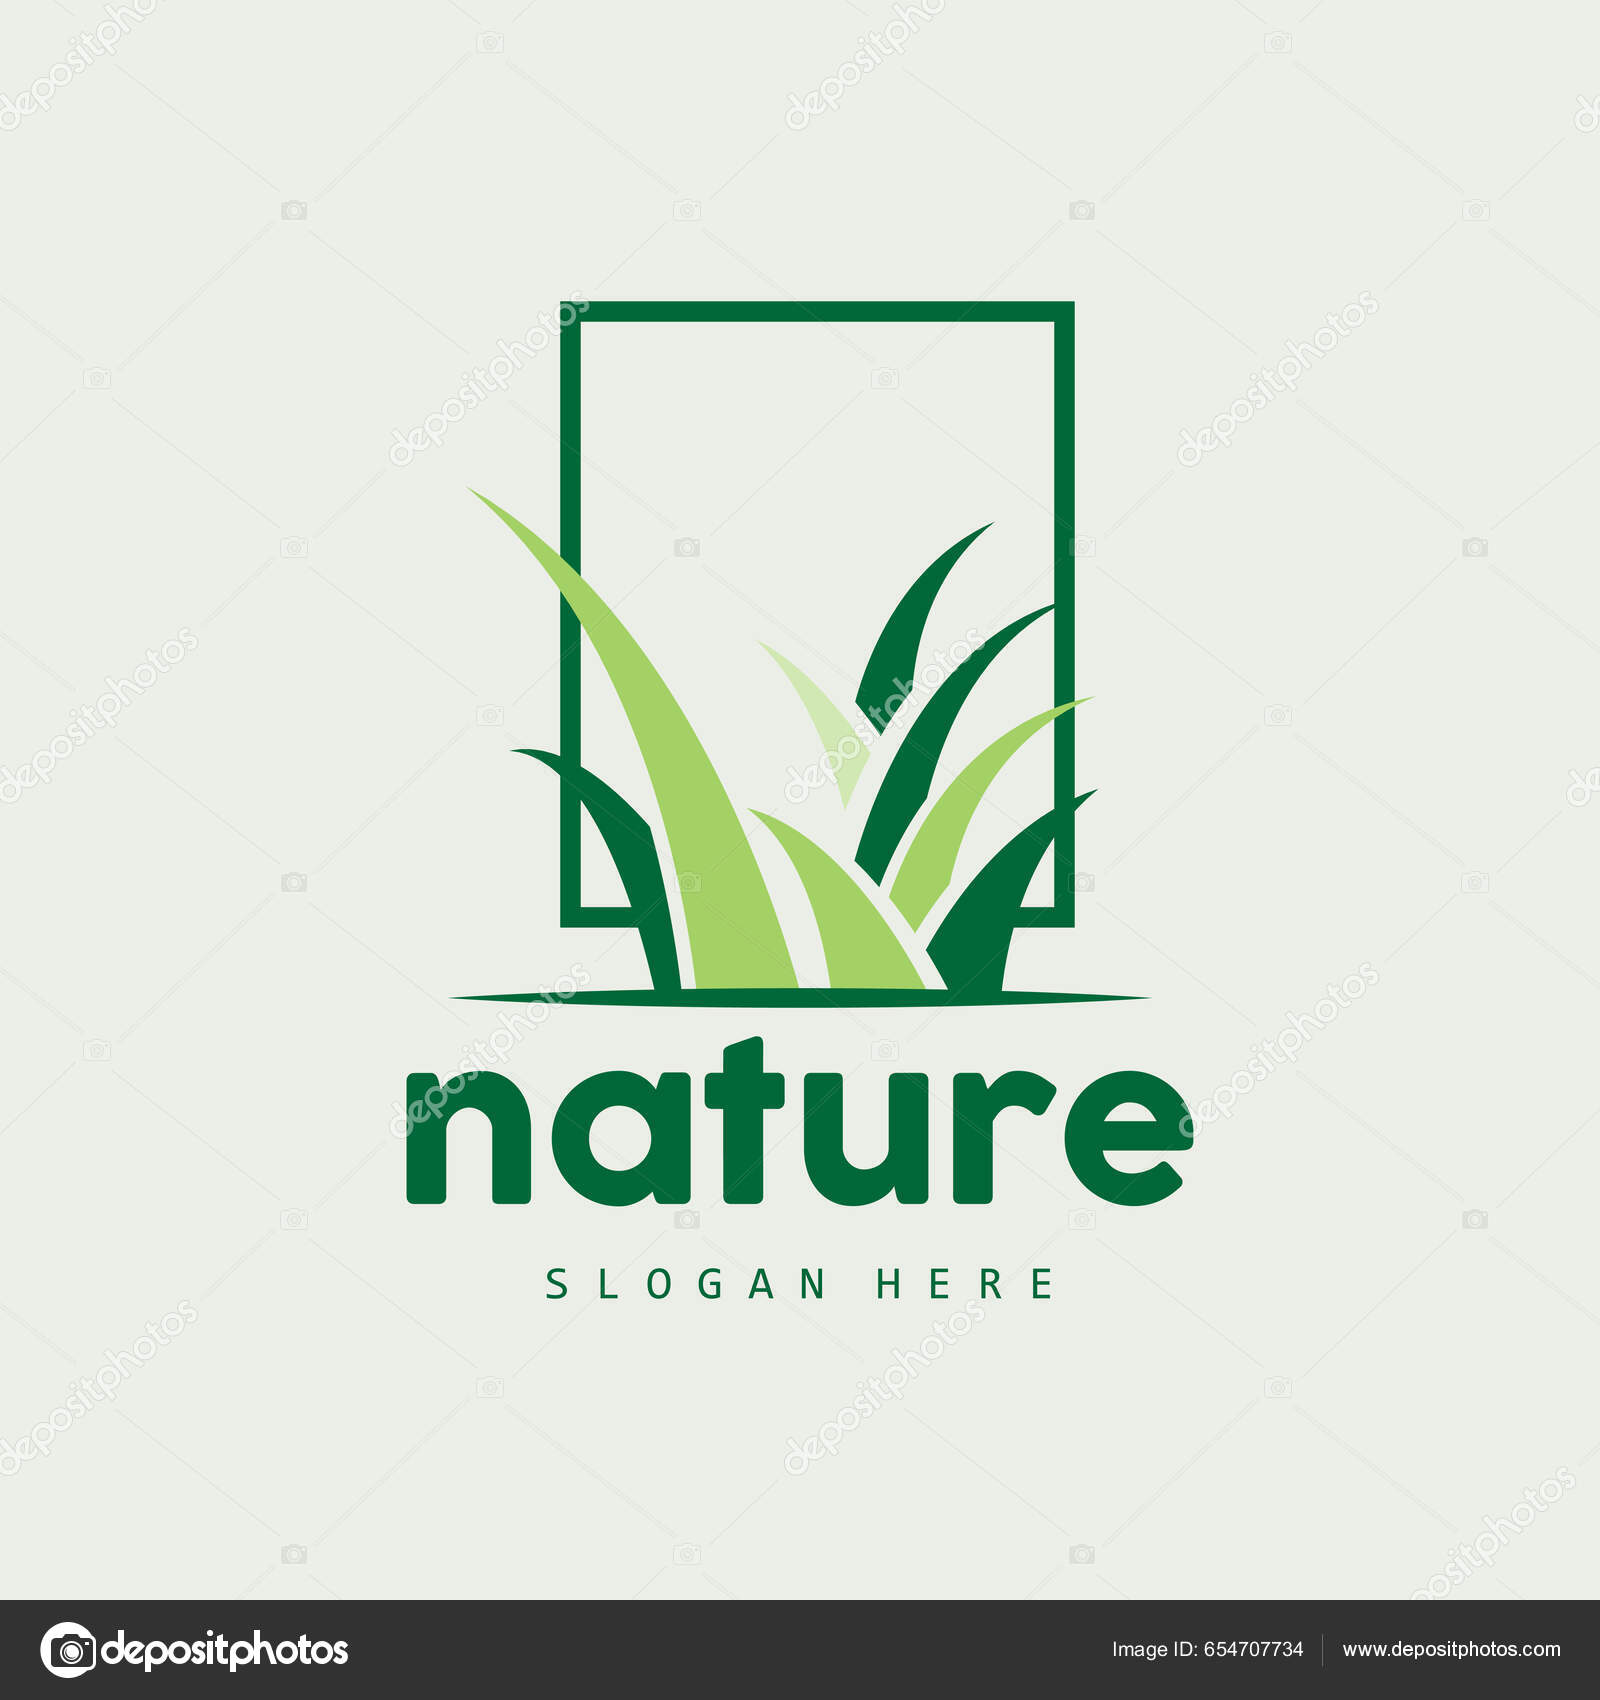 Nature logo Vector Art Stock Images | Depositphotos